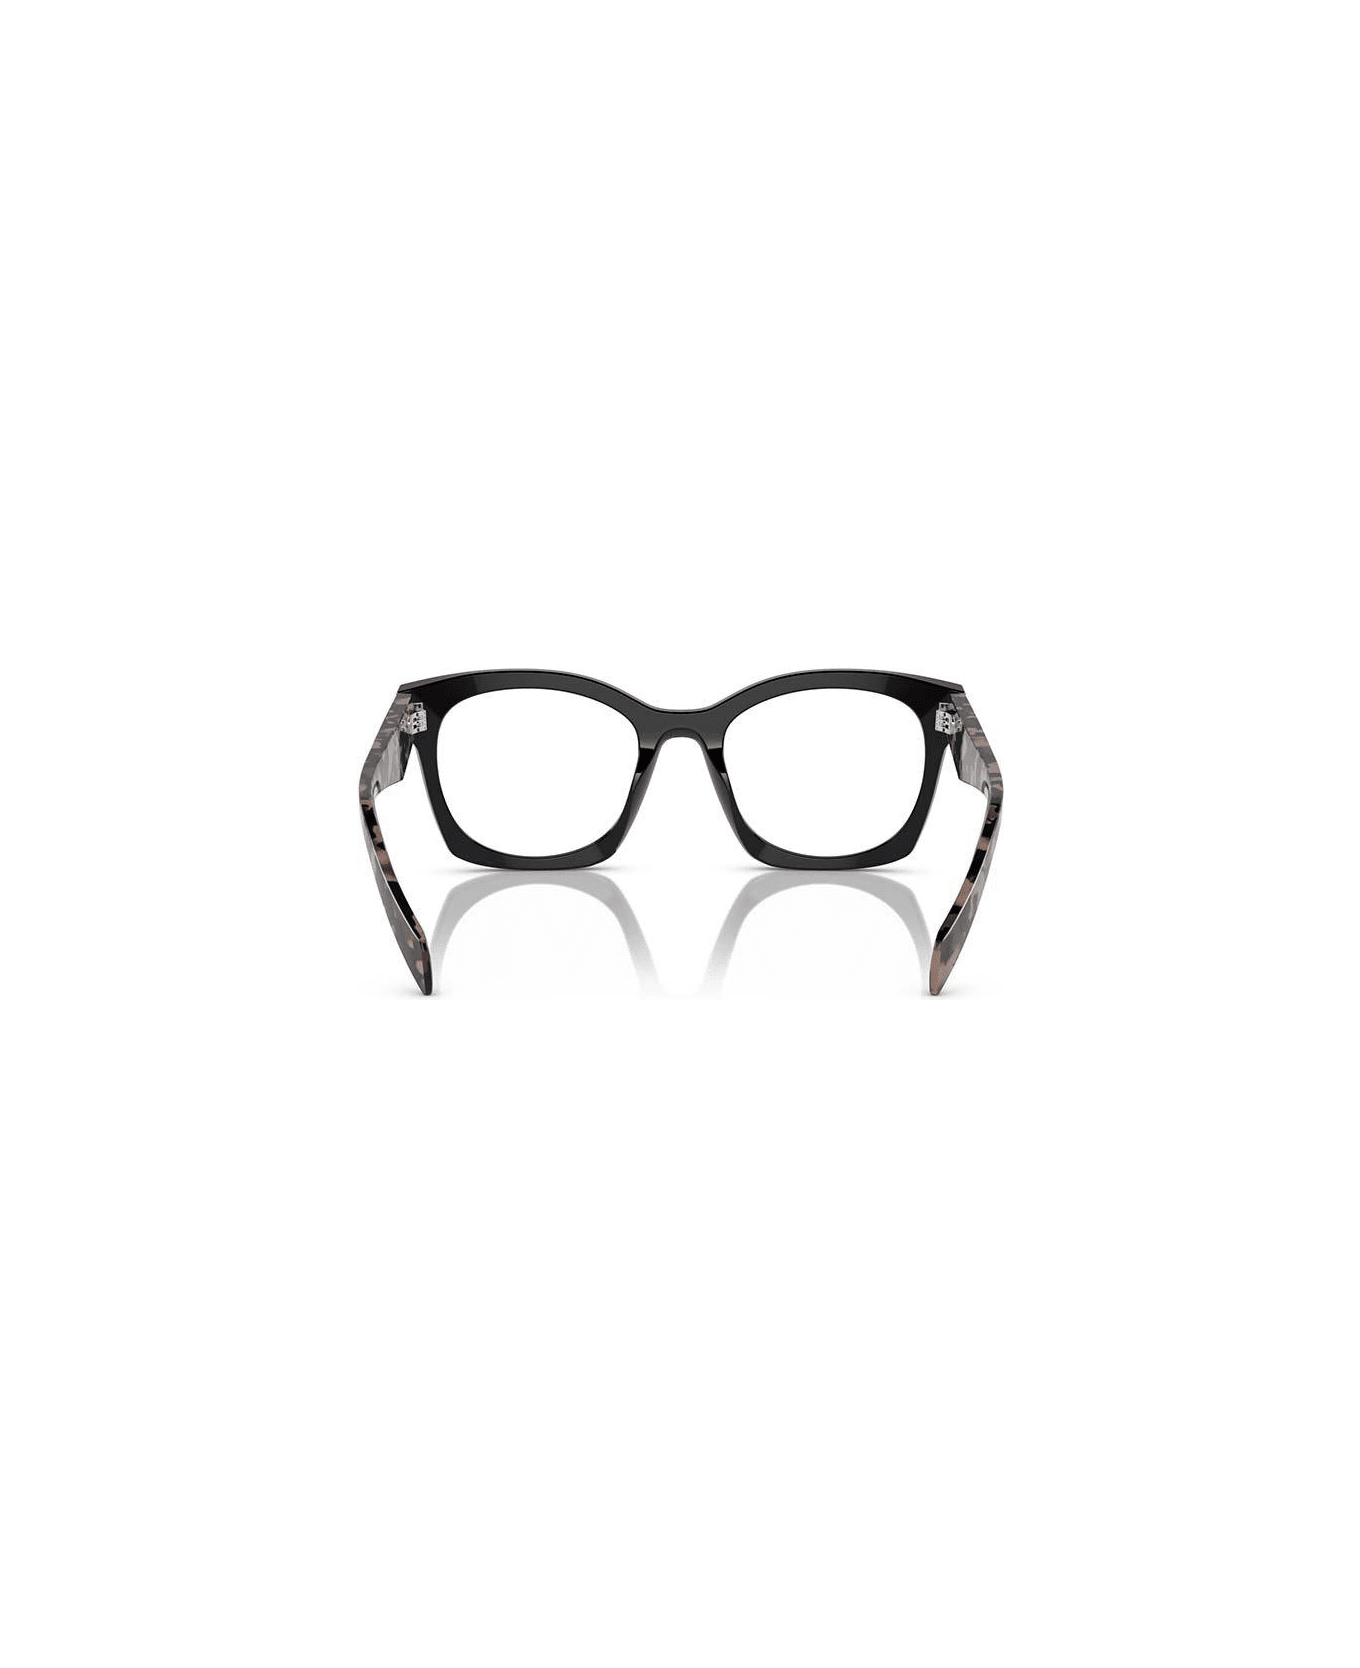 Prada debut Eyewear D-frame Glasses - 13p1o1